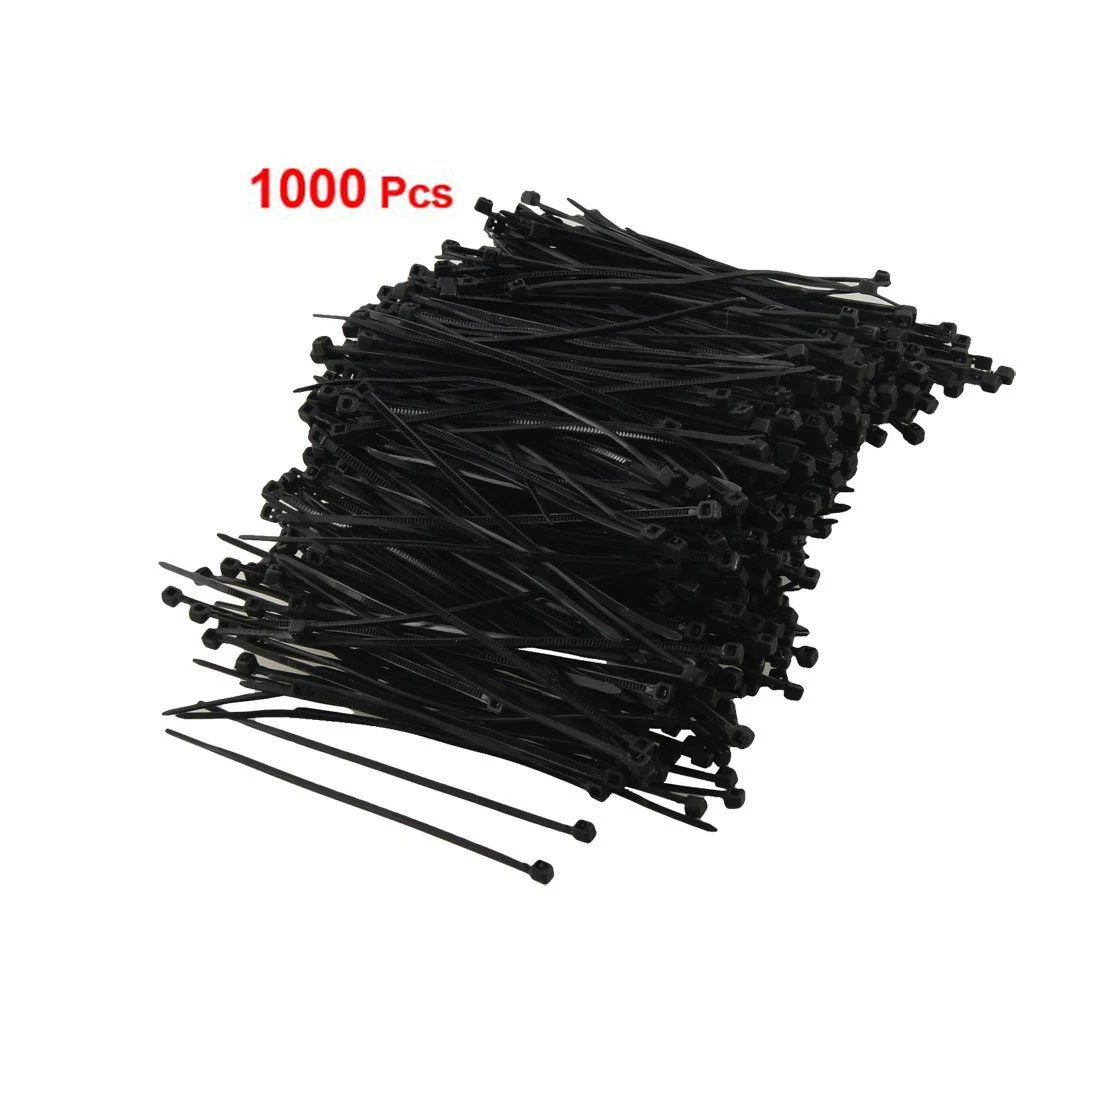 IMC Горячее предложение 1000 шт Черный Пластиковый кабель на молнии стяжка 95 мм x 2 мм